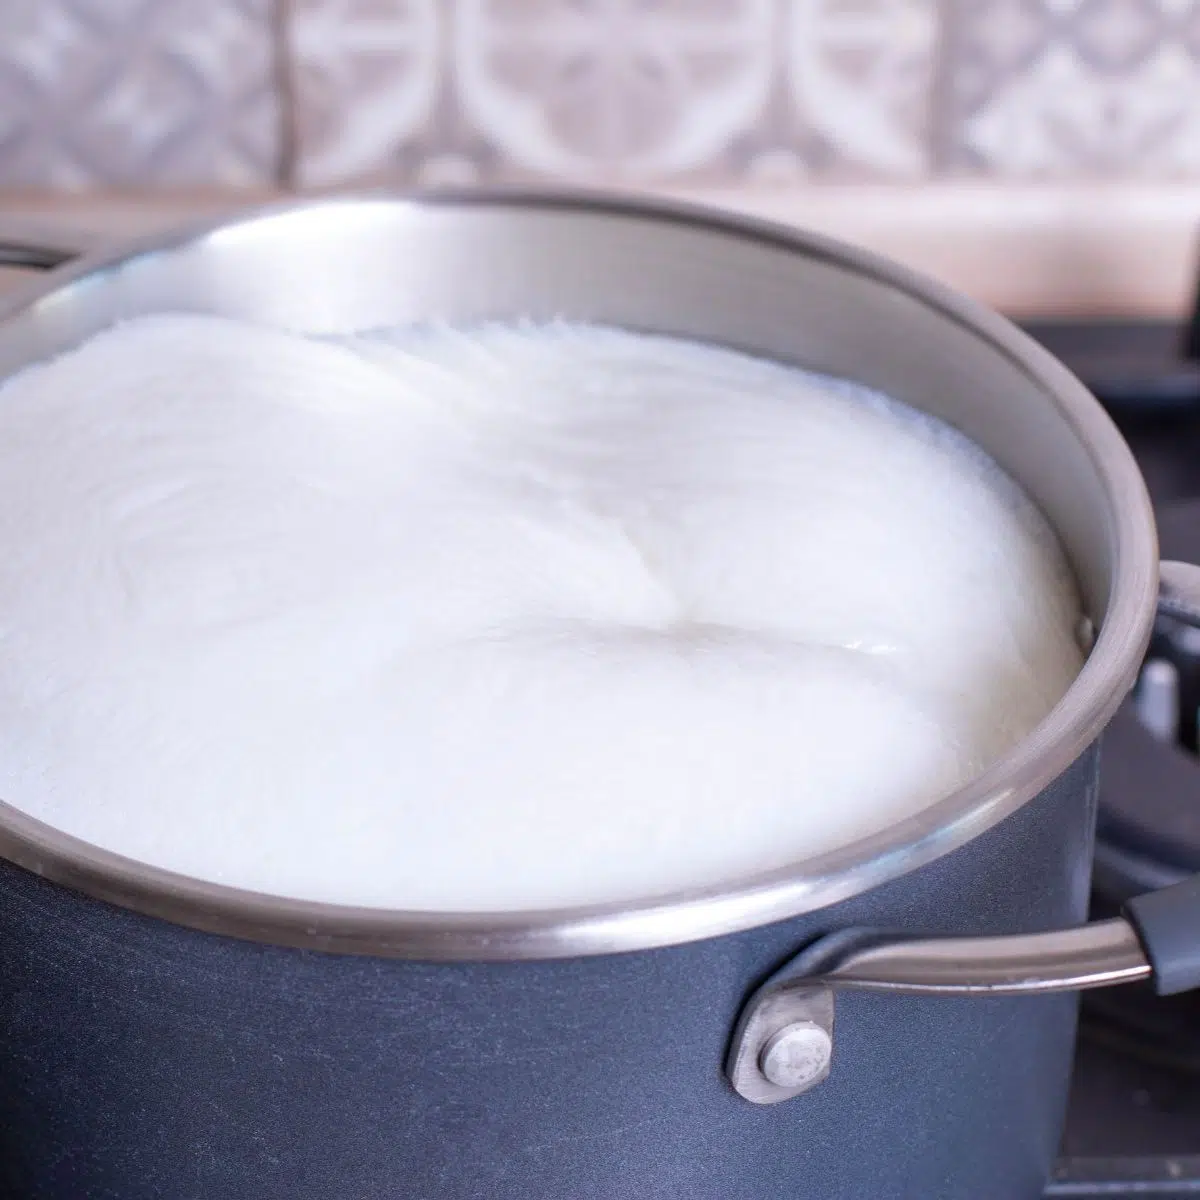 كيفية تحرق الحليب بسرعة للبطاطس المهروسة بالحليب في قدر.